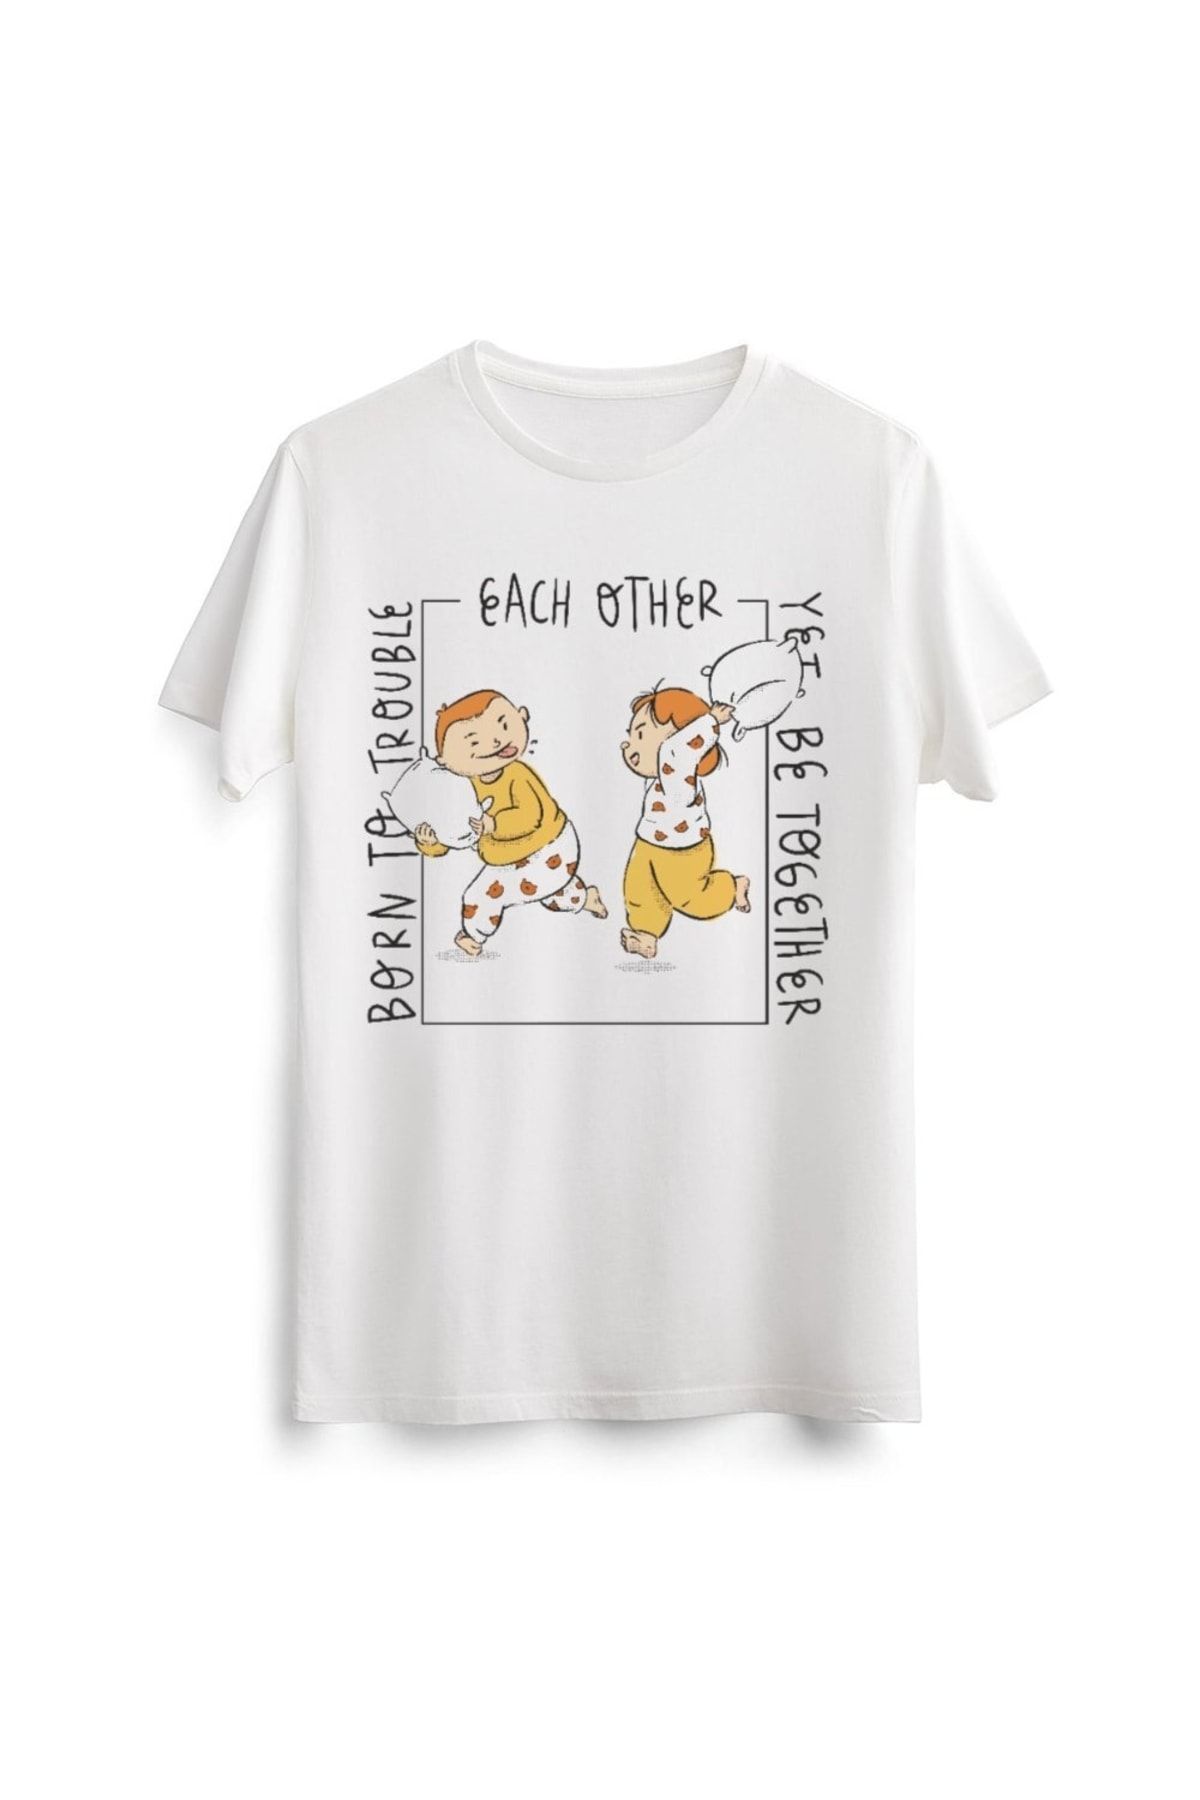 Line Art Cafe Unisex Erkek Kadın Sevimli Cute Kardeş Arkadaş Baskılı Tasarım Beyaz Tişört Tshirt T-shirt